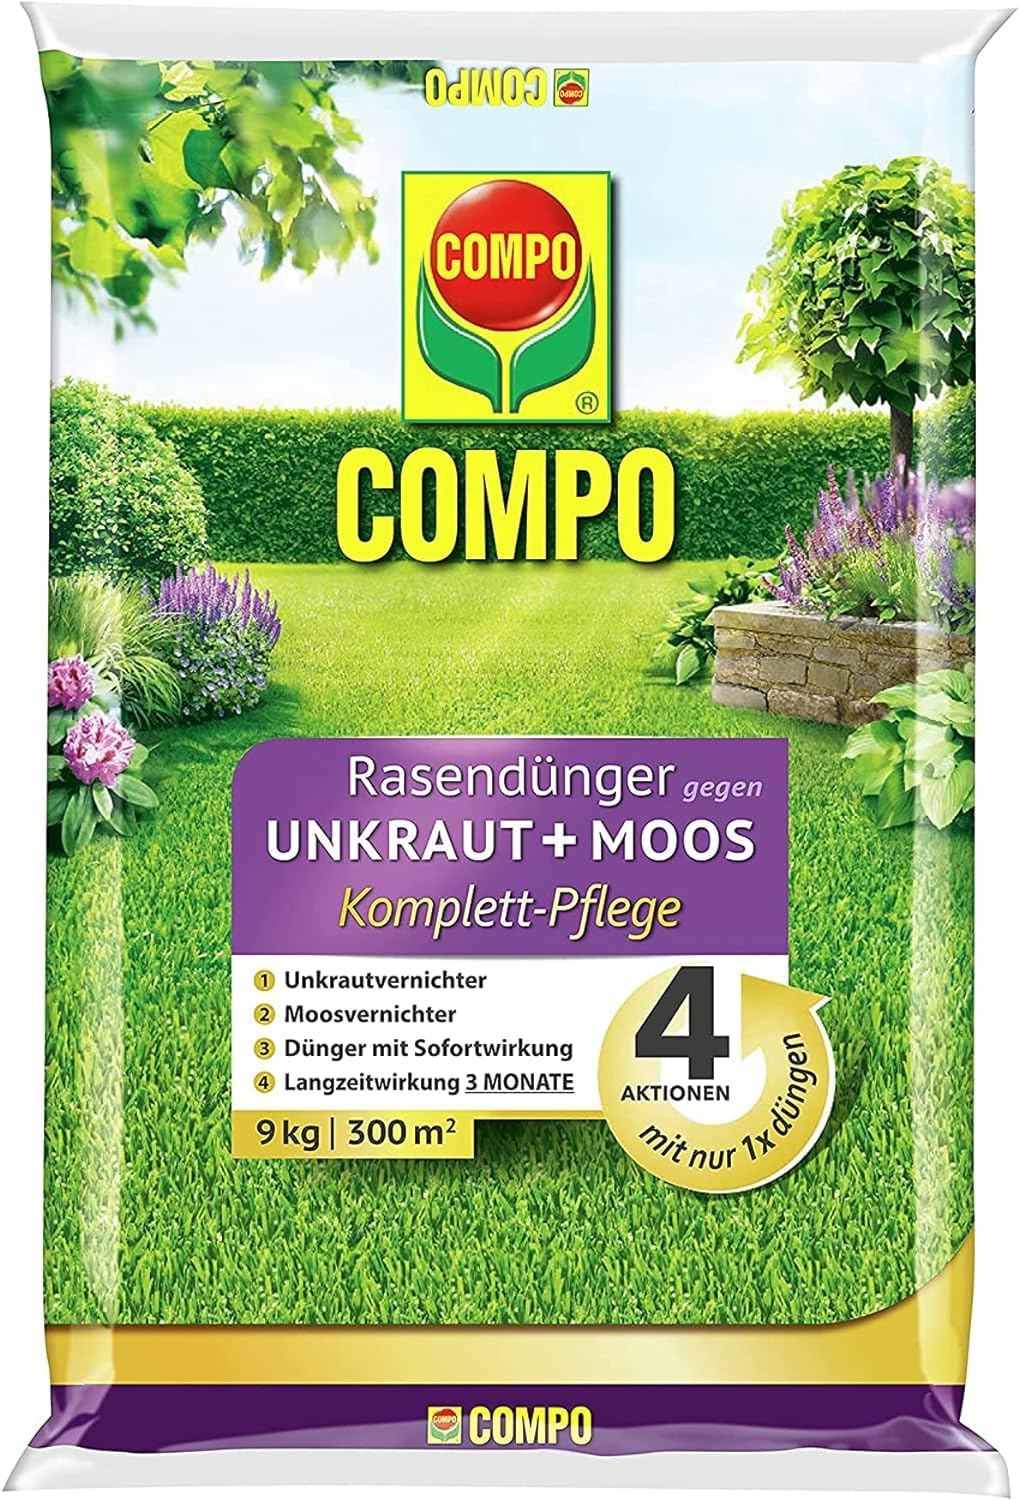 COMPO Rasendünger gegen Moos und Unkraut - 3 Monate Langzeitwirkung - 9 kg / 300m²